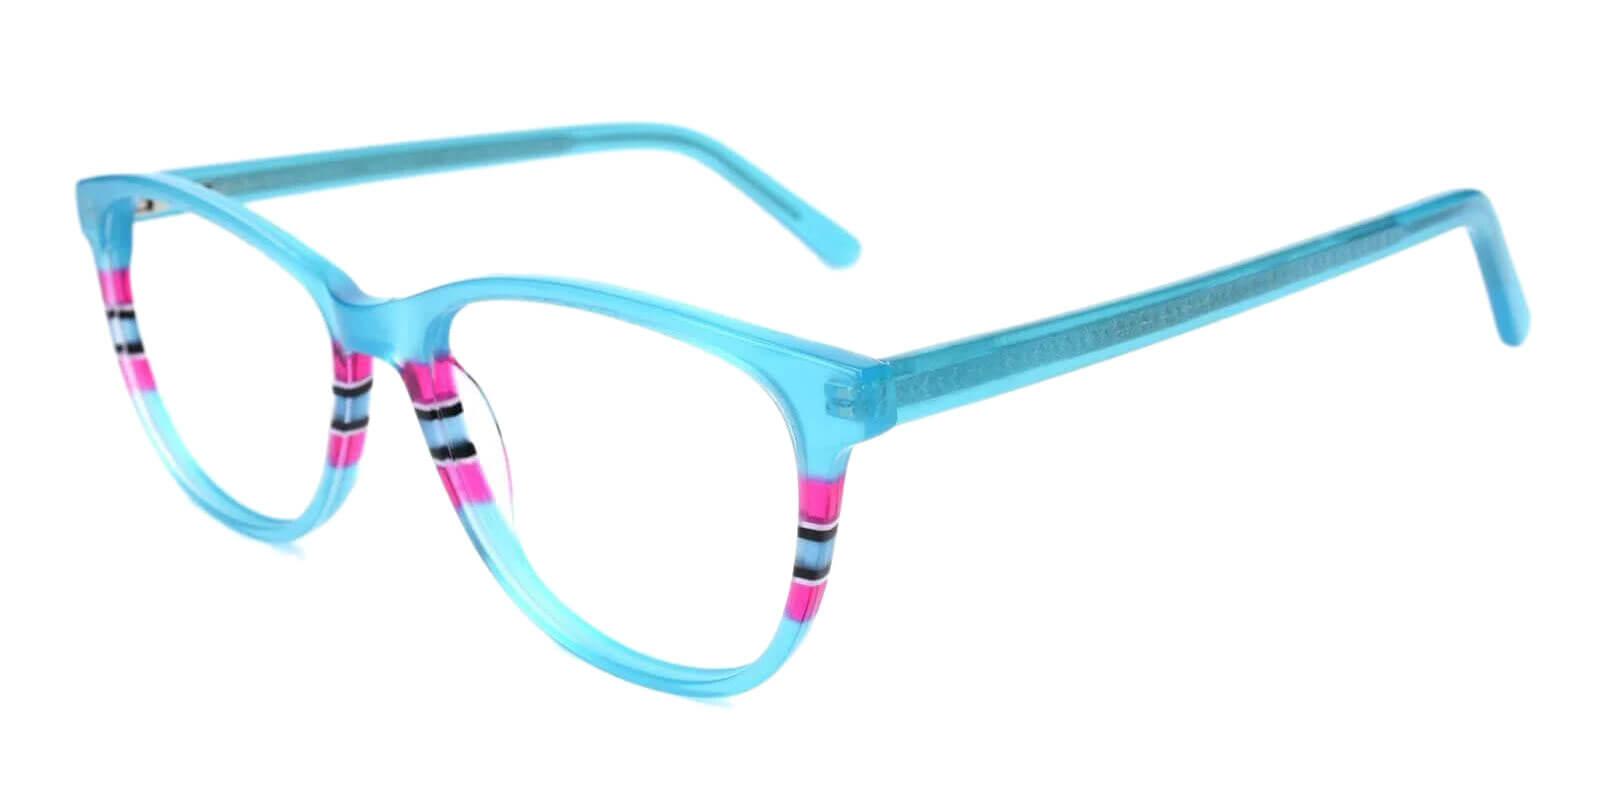 Vltava Green Acetate Eyeglasses , UniversalBridgeFit Frames from ABBE Glasses